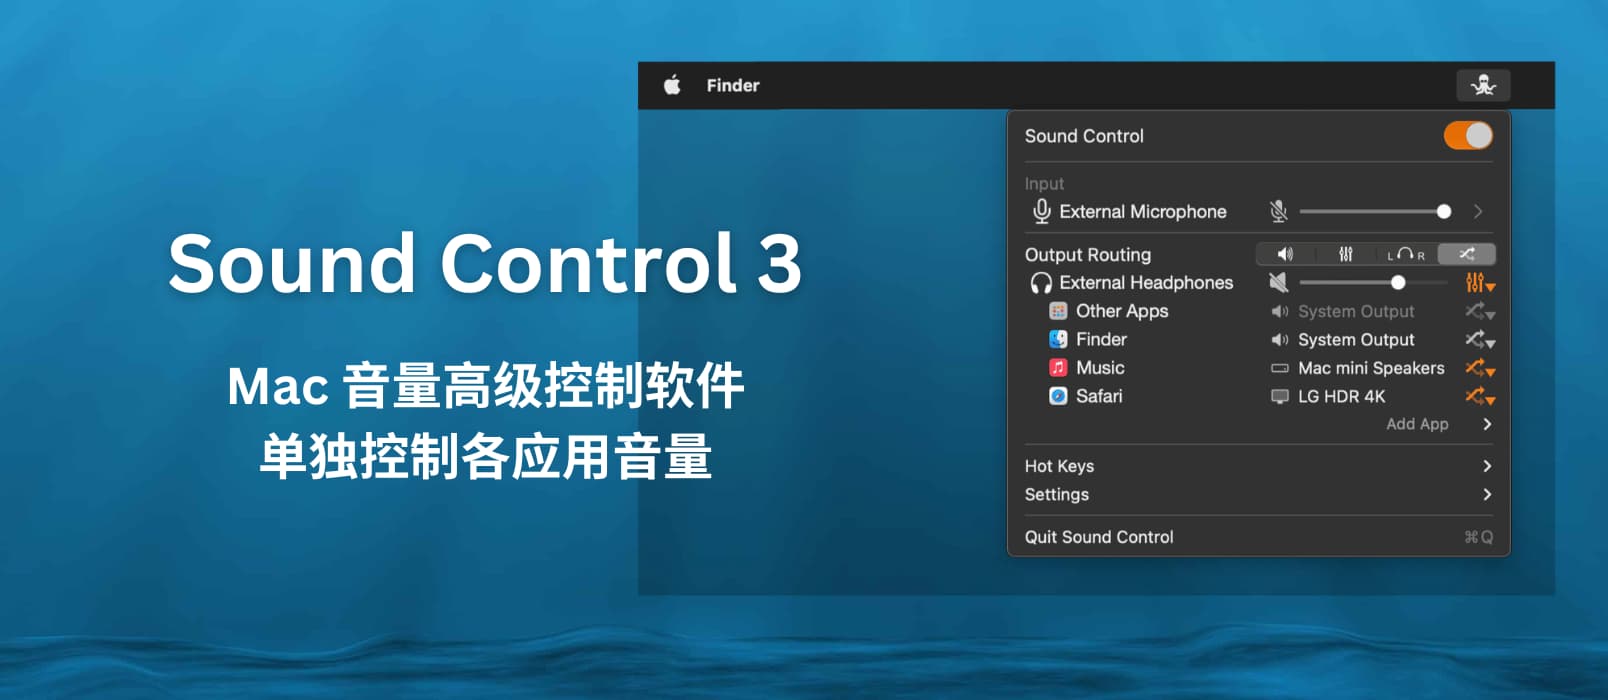 Sound Control 3 - Mac 音量高级控制：单独控制各应用音量